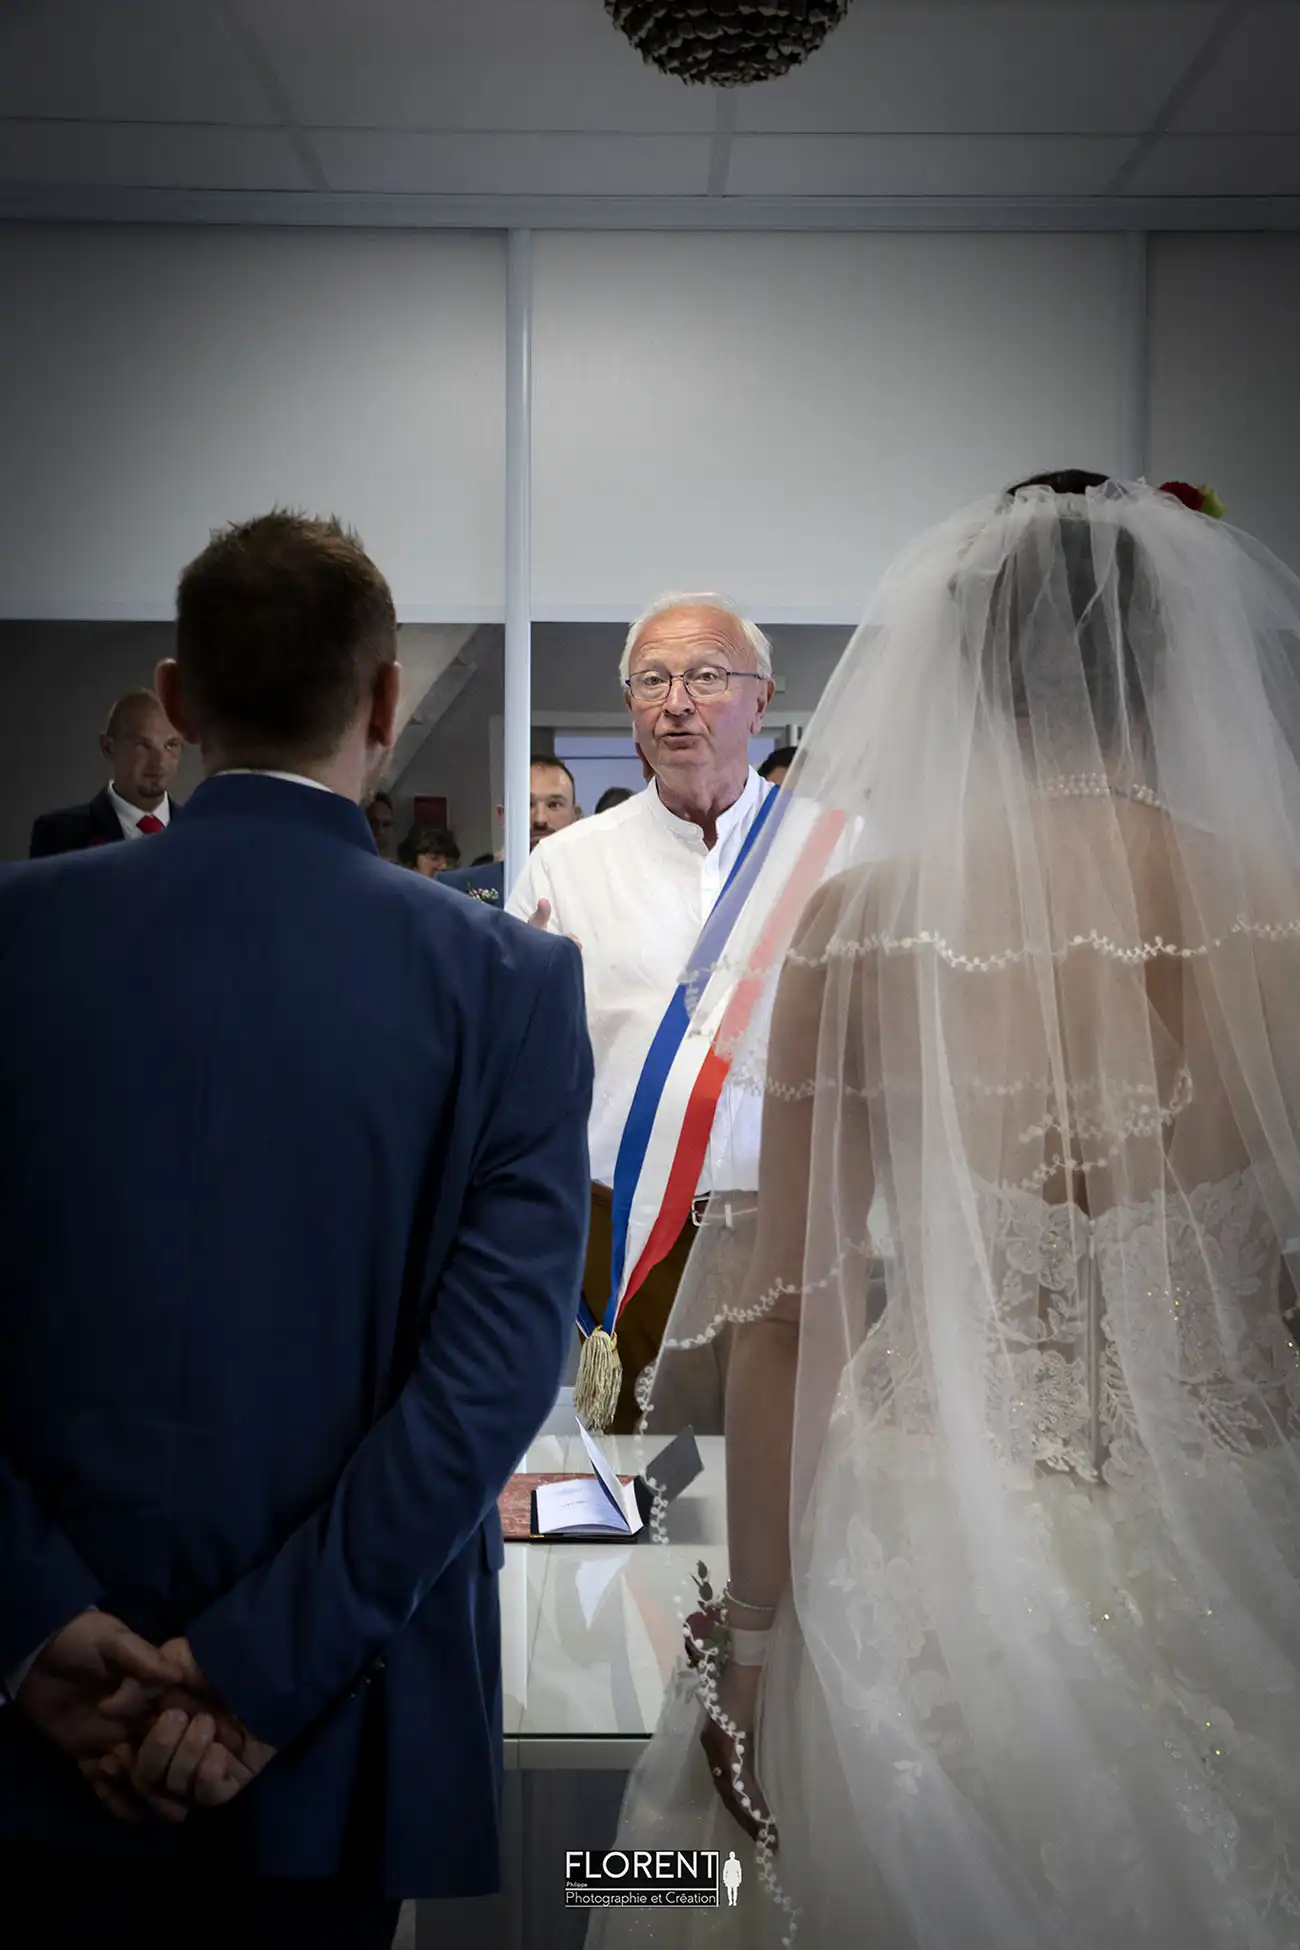 photographe mariage lille etaples les mariés joyeux devant le maire de dos florent mariageboulogne sur mer le touquet paris saint omer